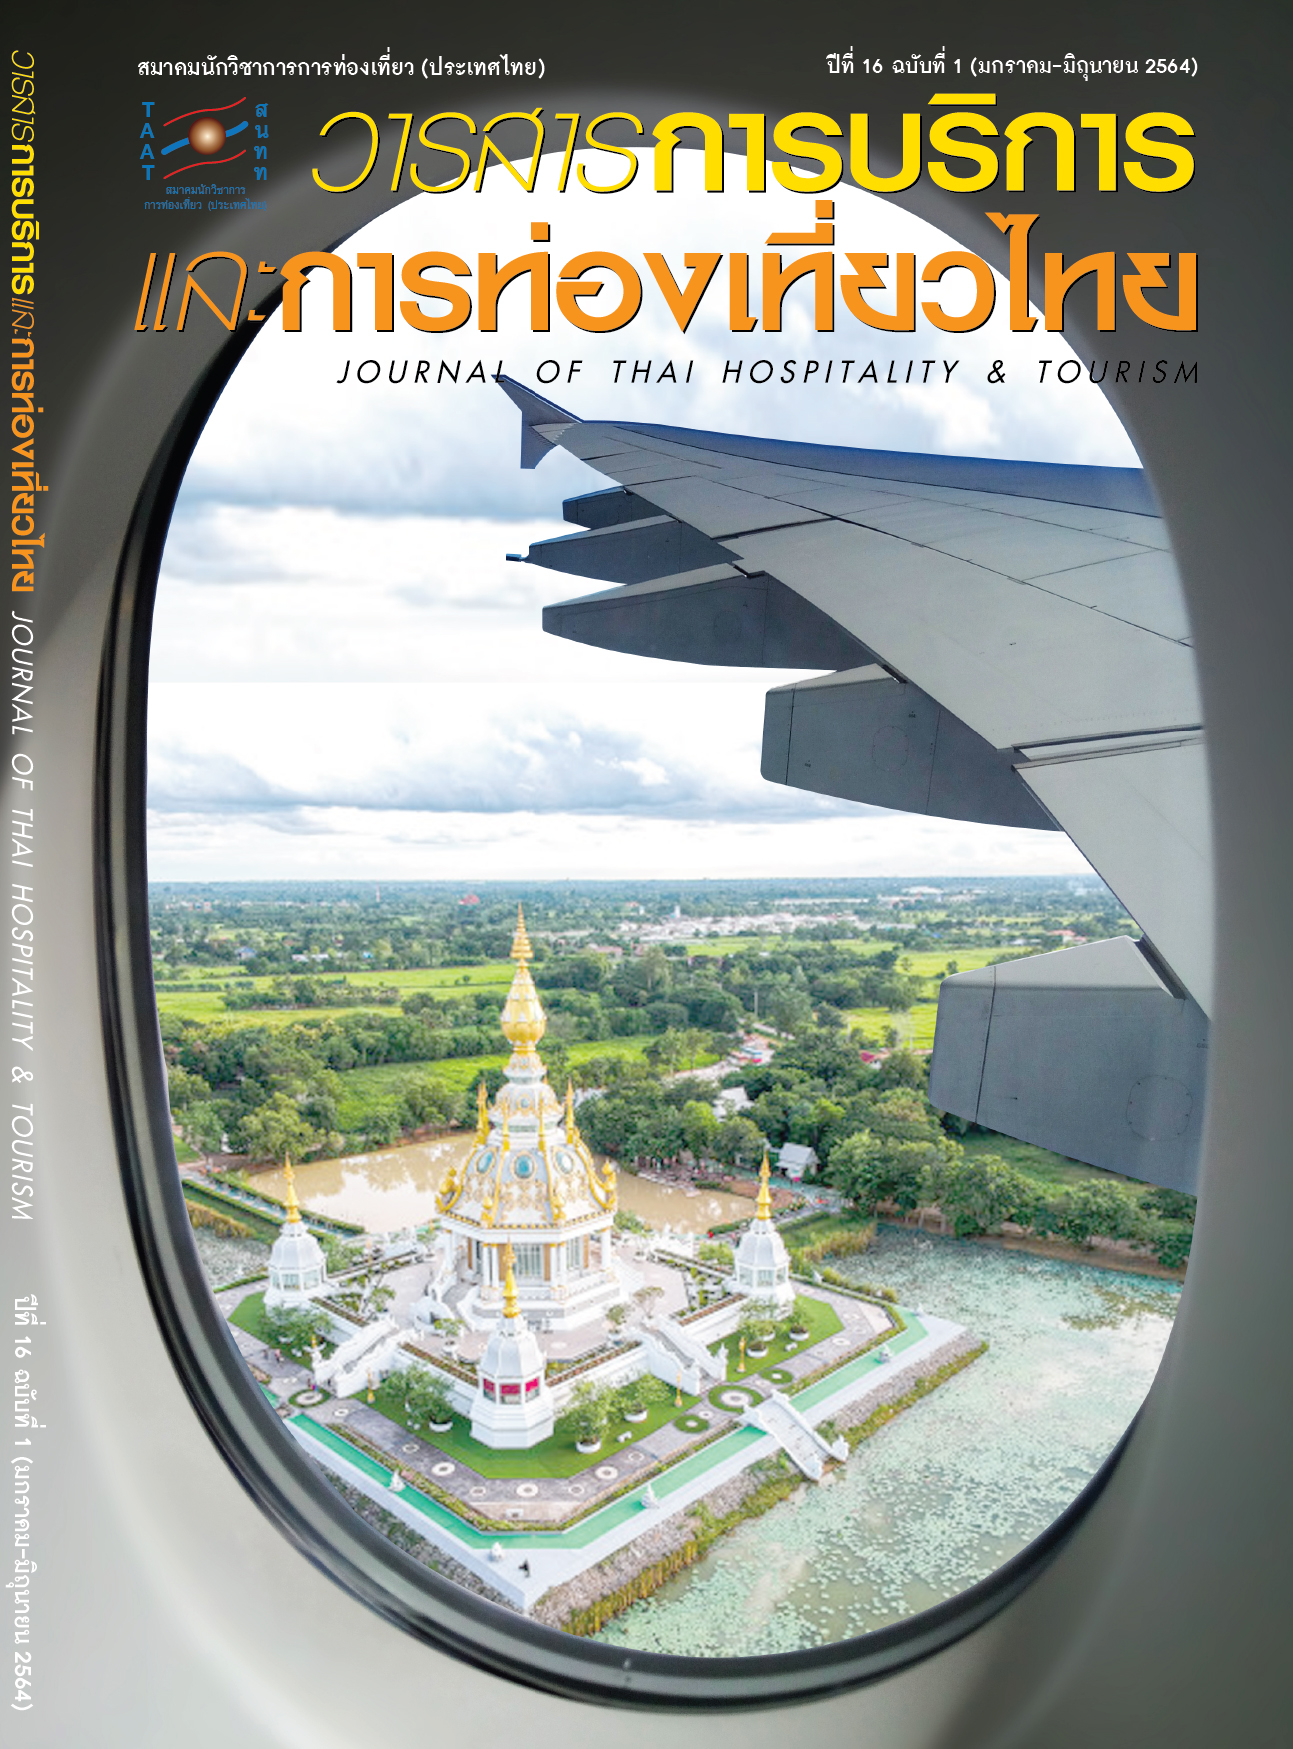 thailand tourism case study